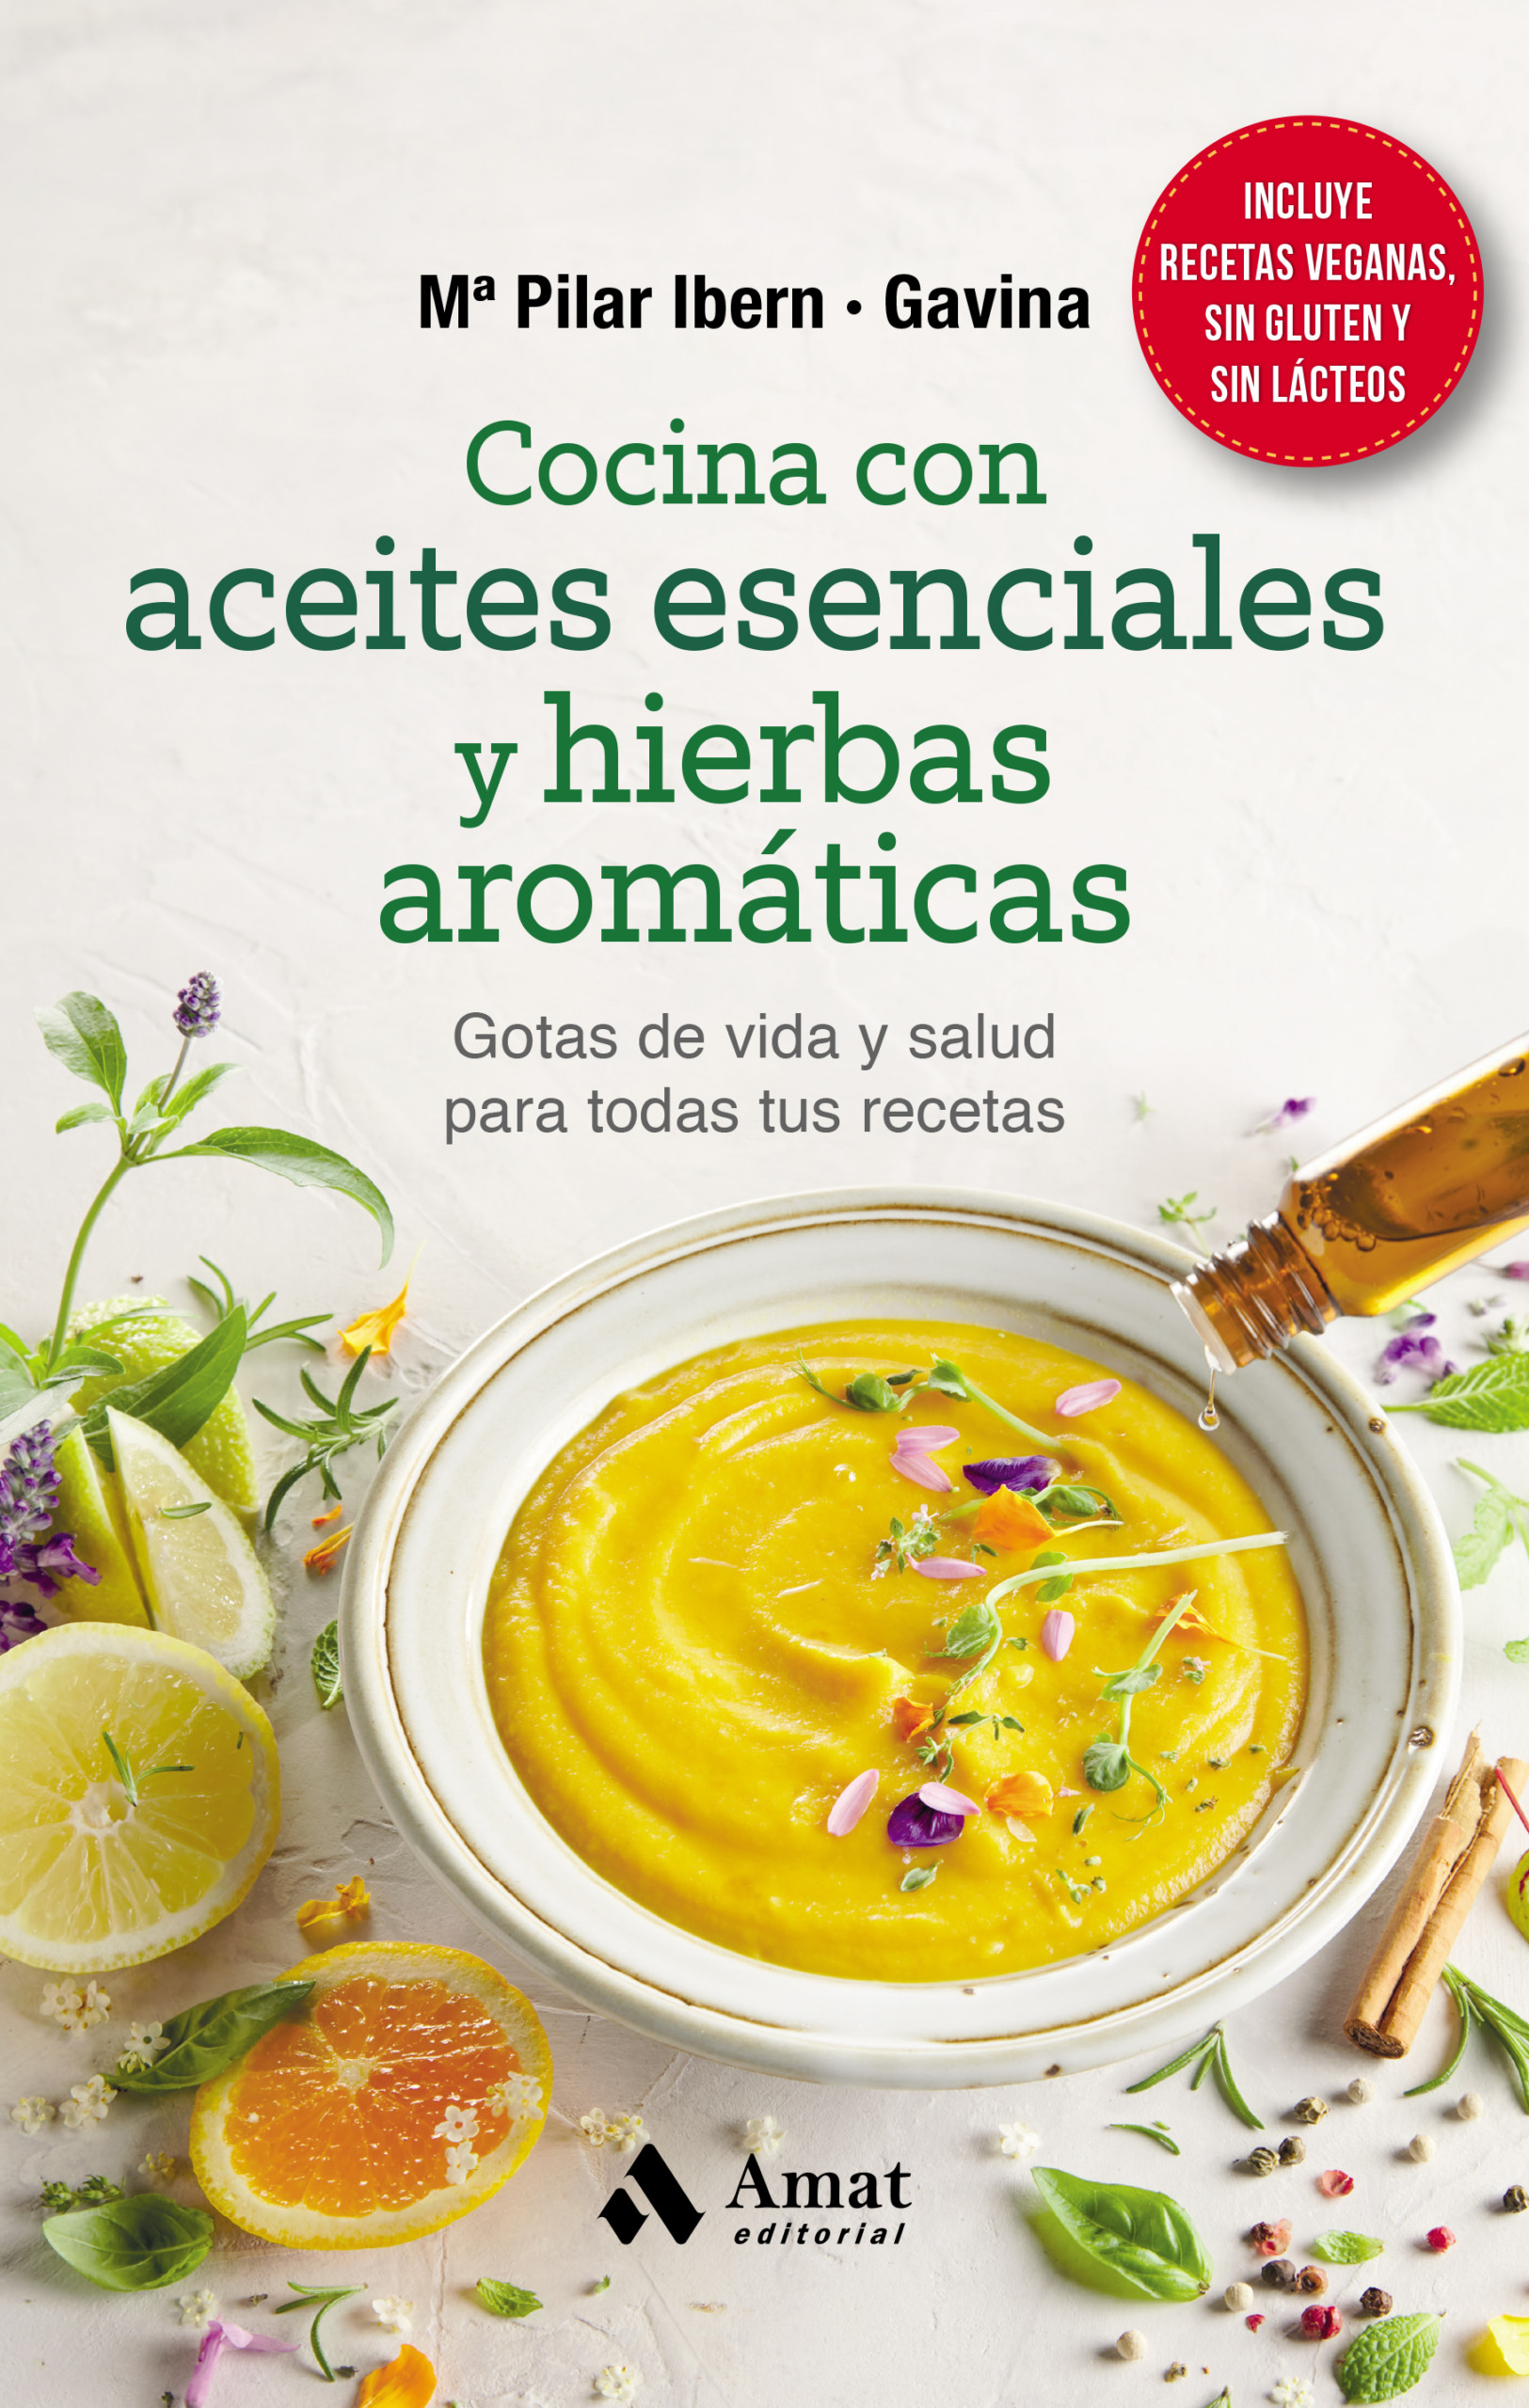 Cocina con aceites esenciales y hierbas aromáticas - Editorial Amat